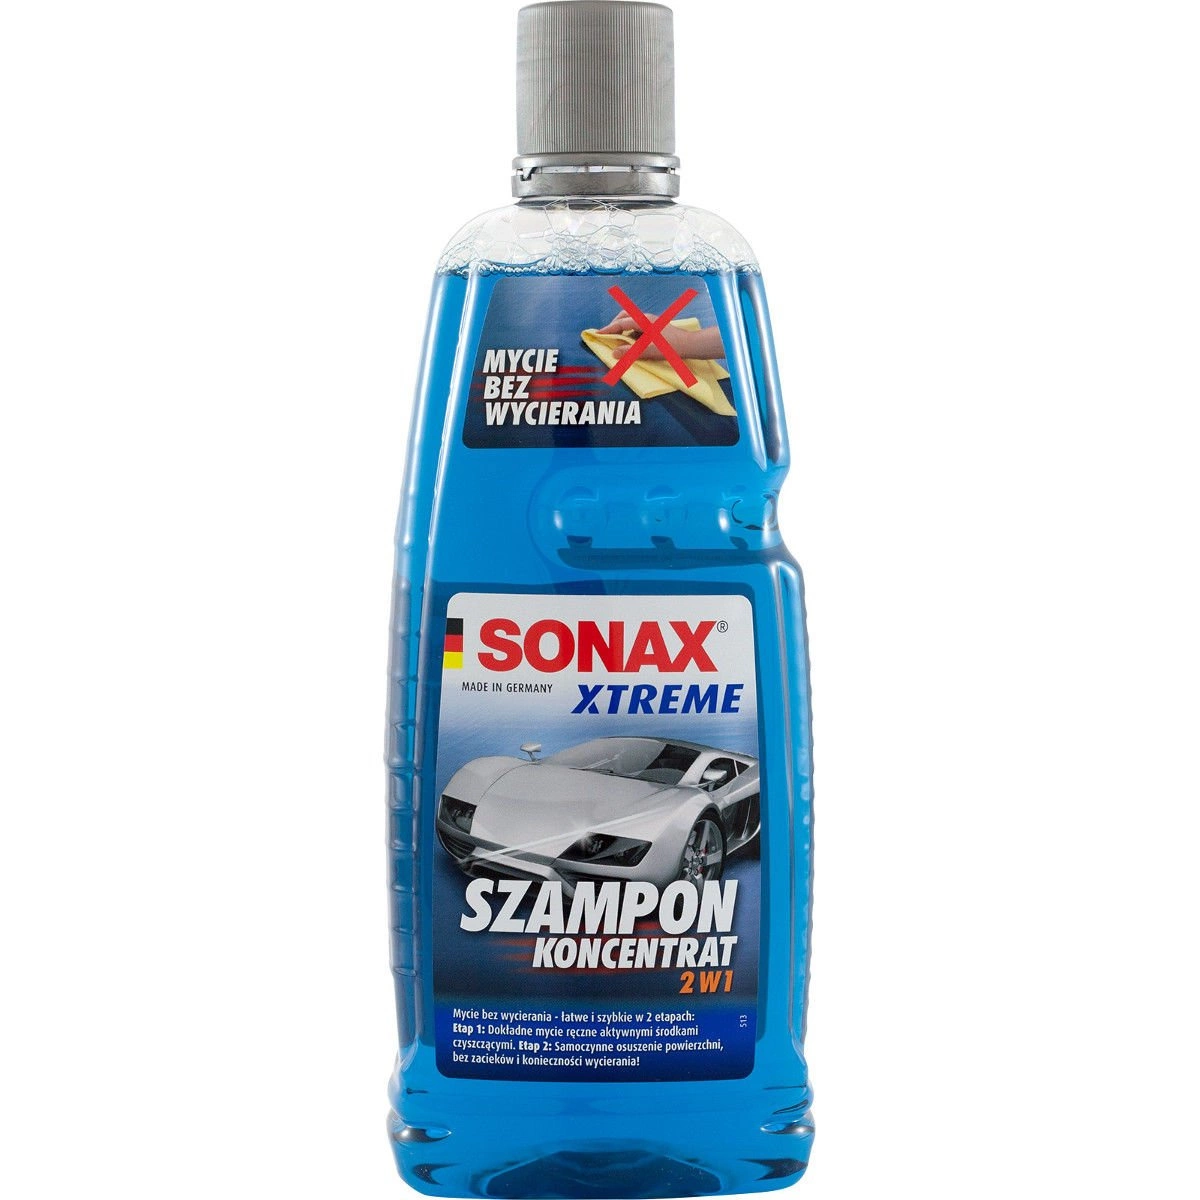 sonax xtreme szampon opinie